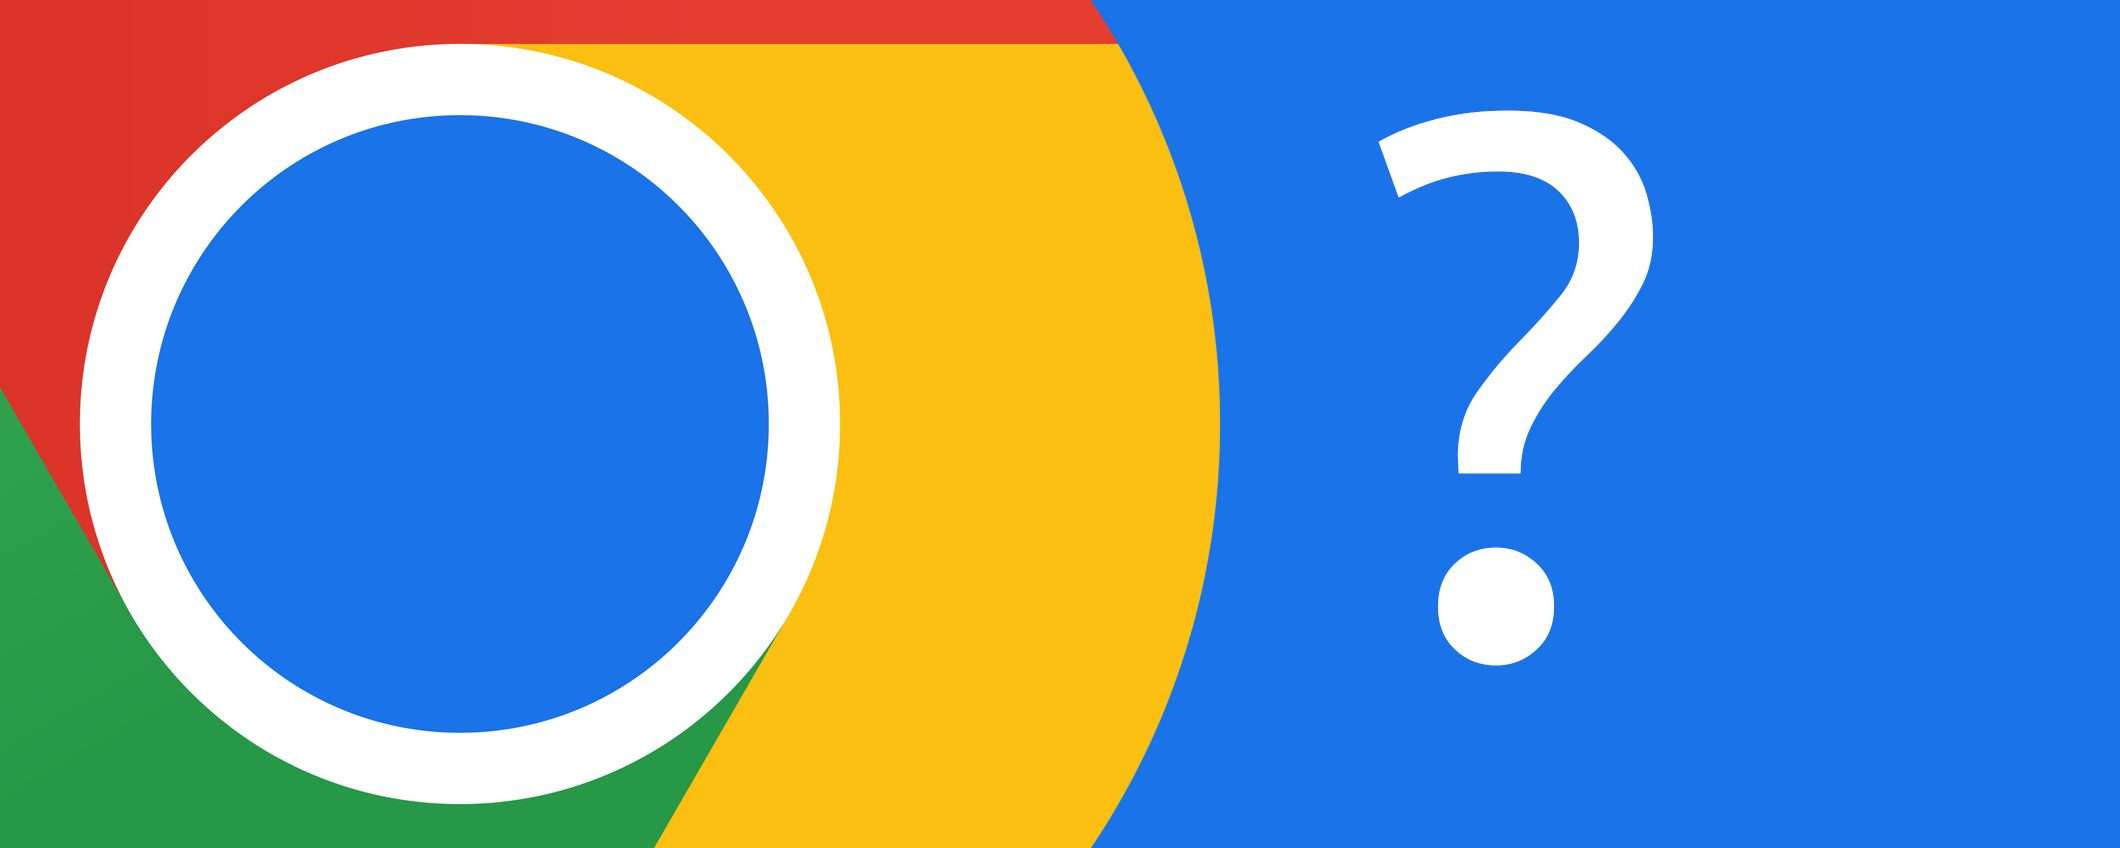 Chrome: il nuovo logo avrebbe potuto essere così